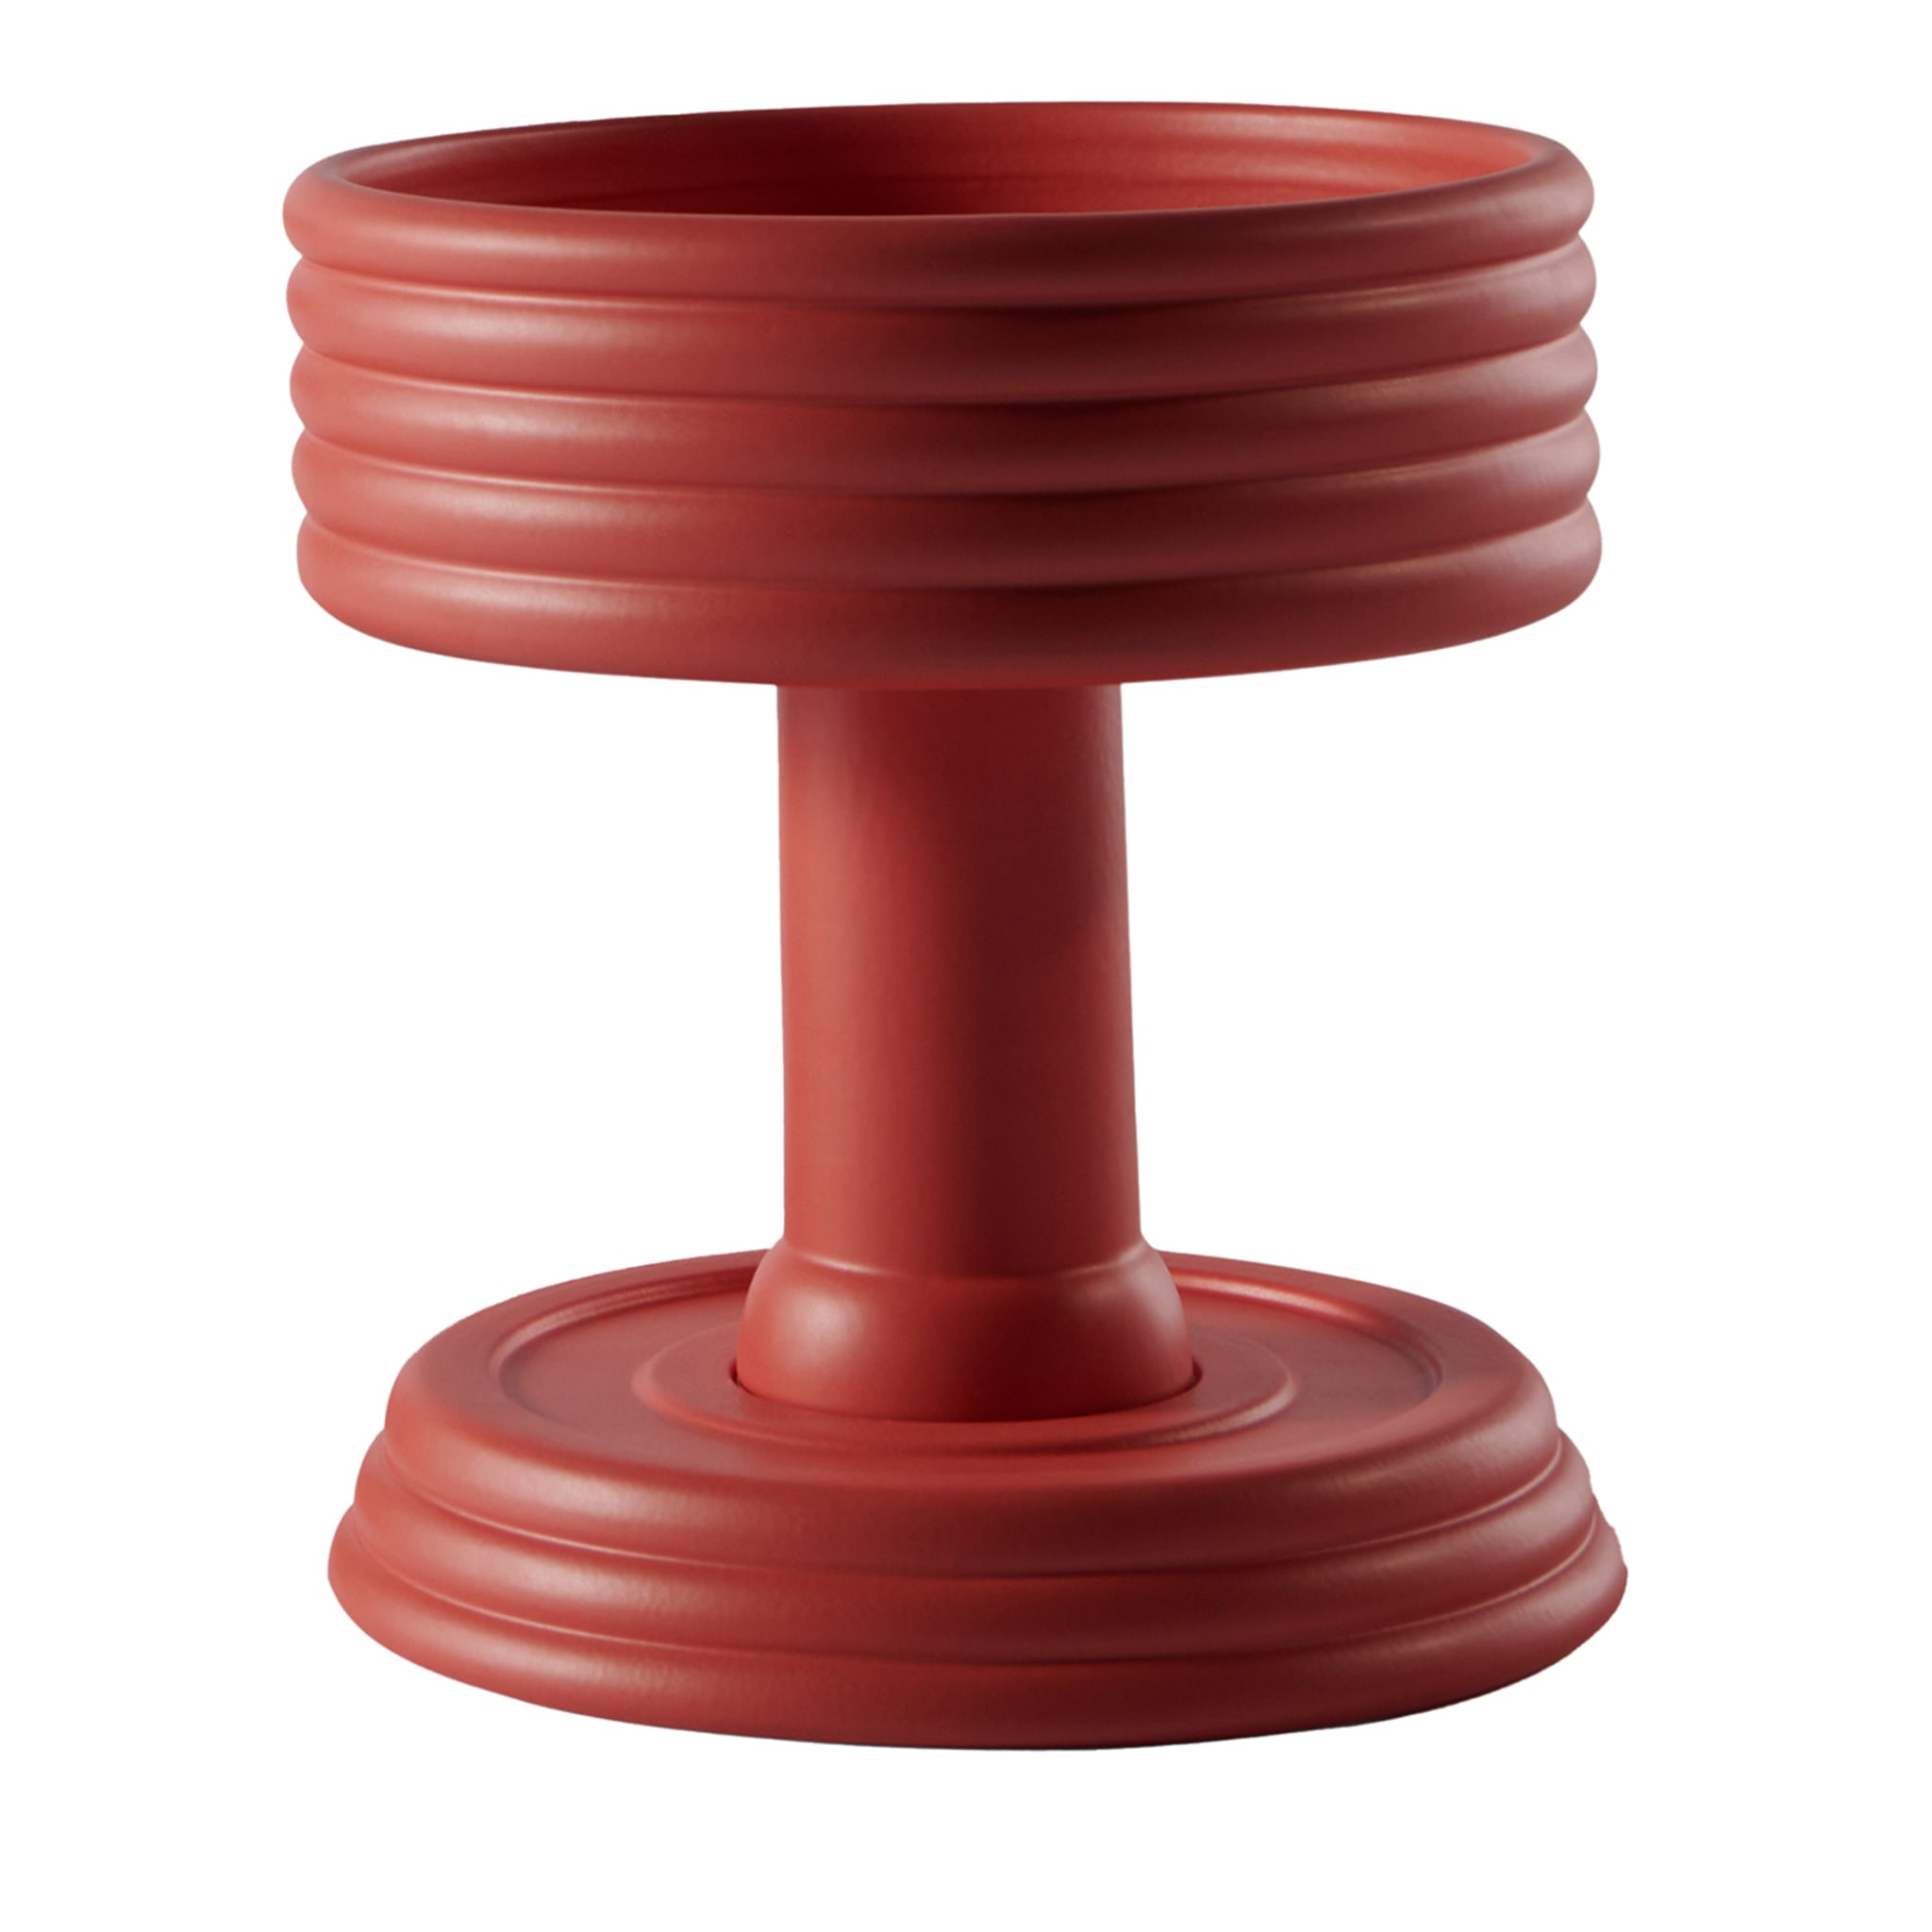 Triplex Un centro de mesa de cerámica roja de edición limitada de Andrea Branciforti - Vista principal